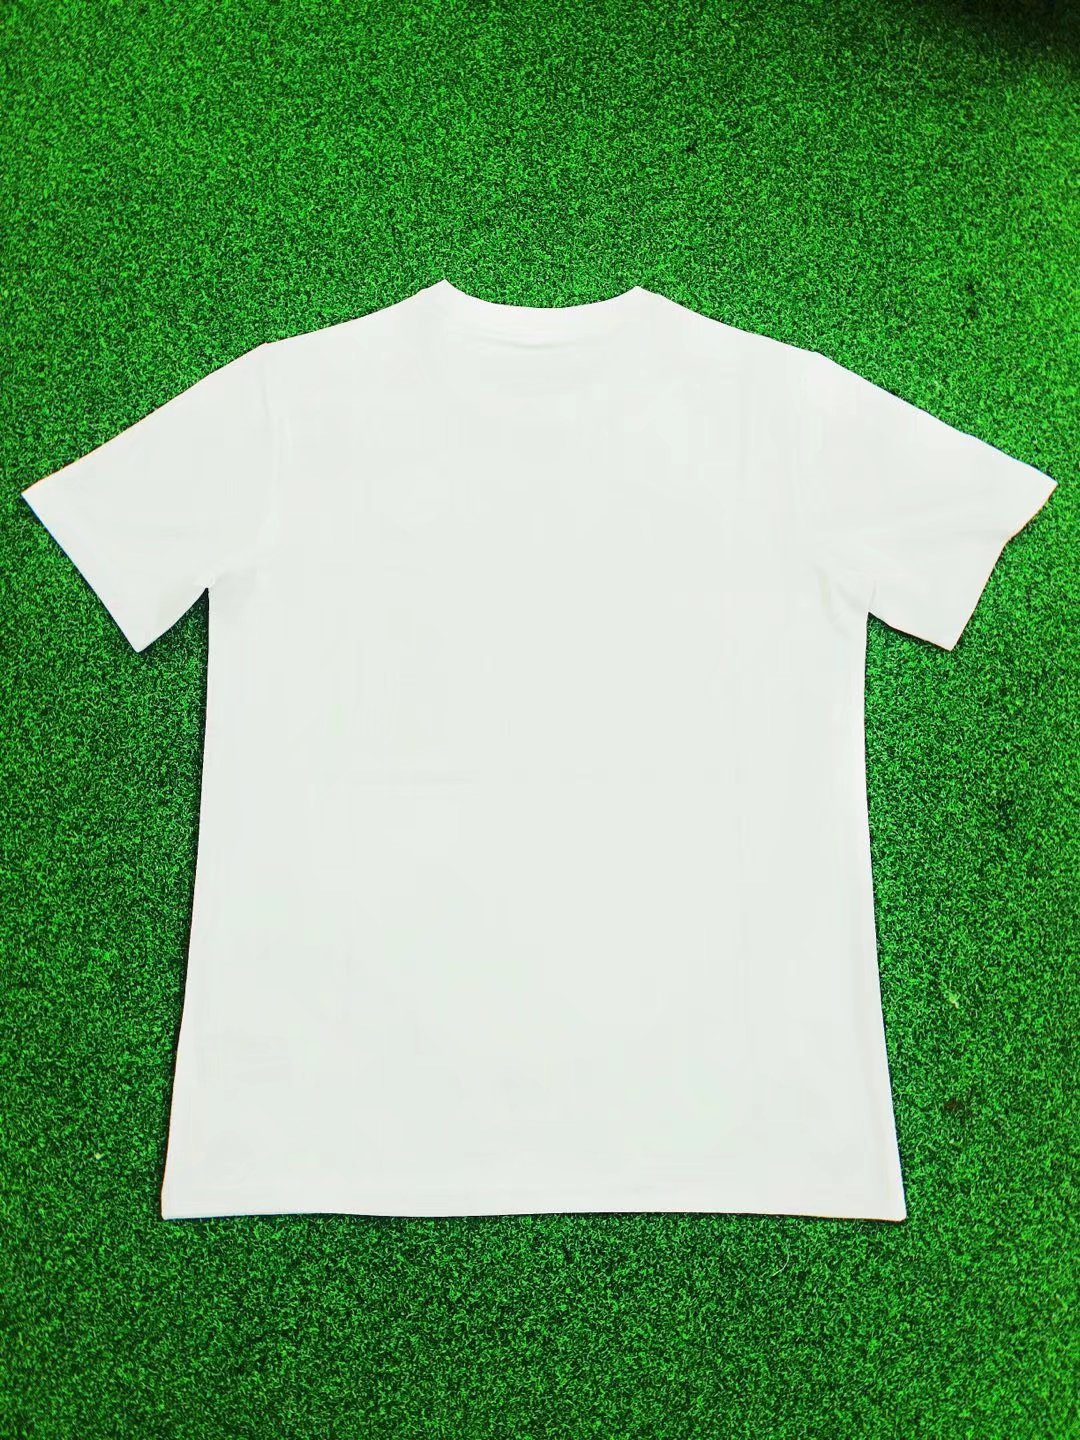 PSG Soccer T-Shirt White Mens 2021/22